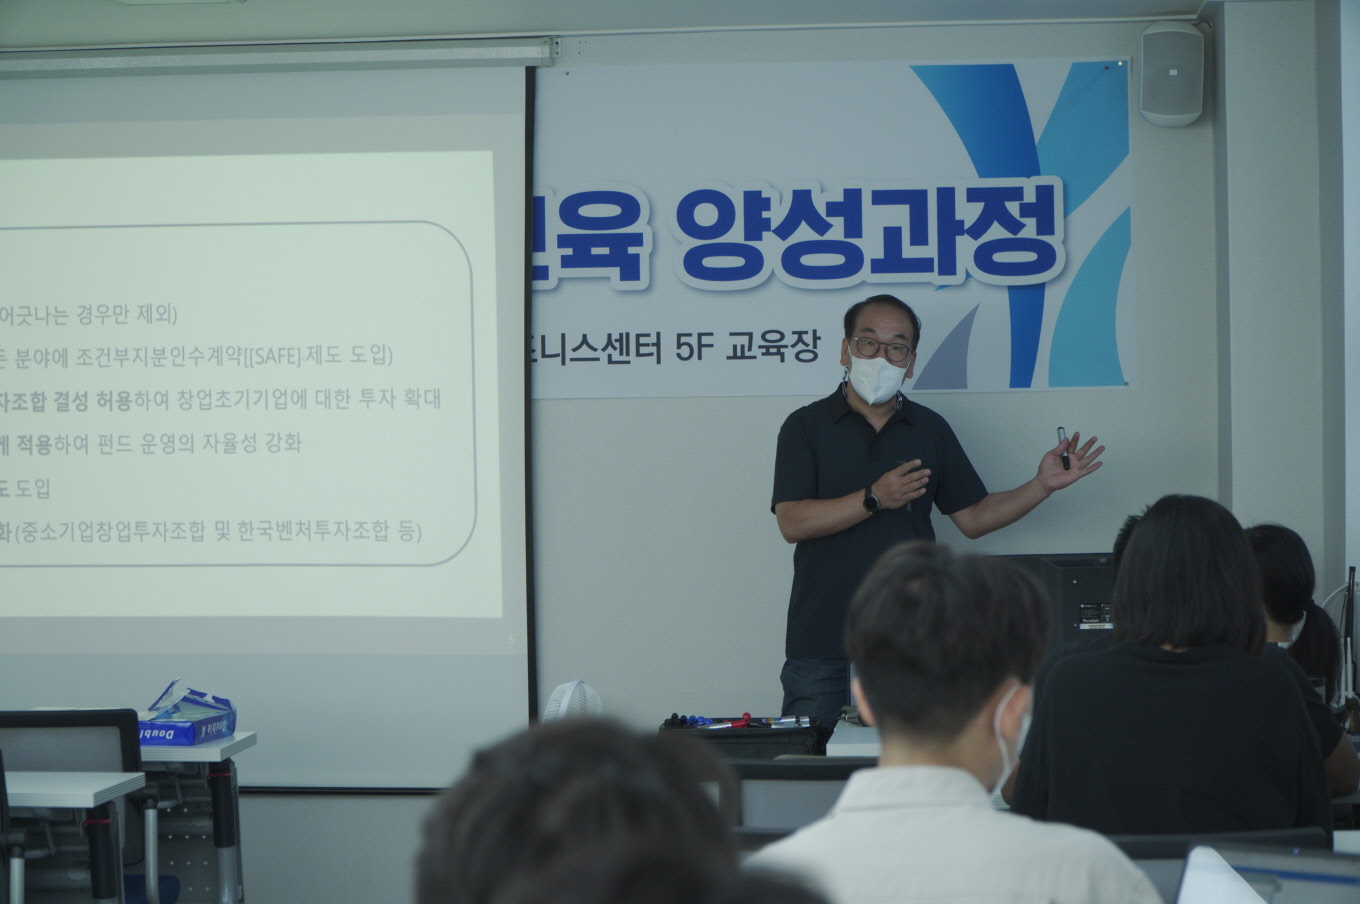 제 34회 창업지도사 1급 광주·전남 교육과정 사진8